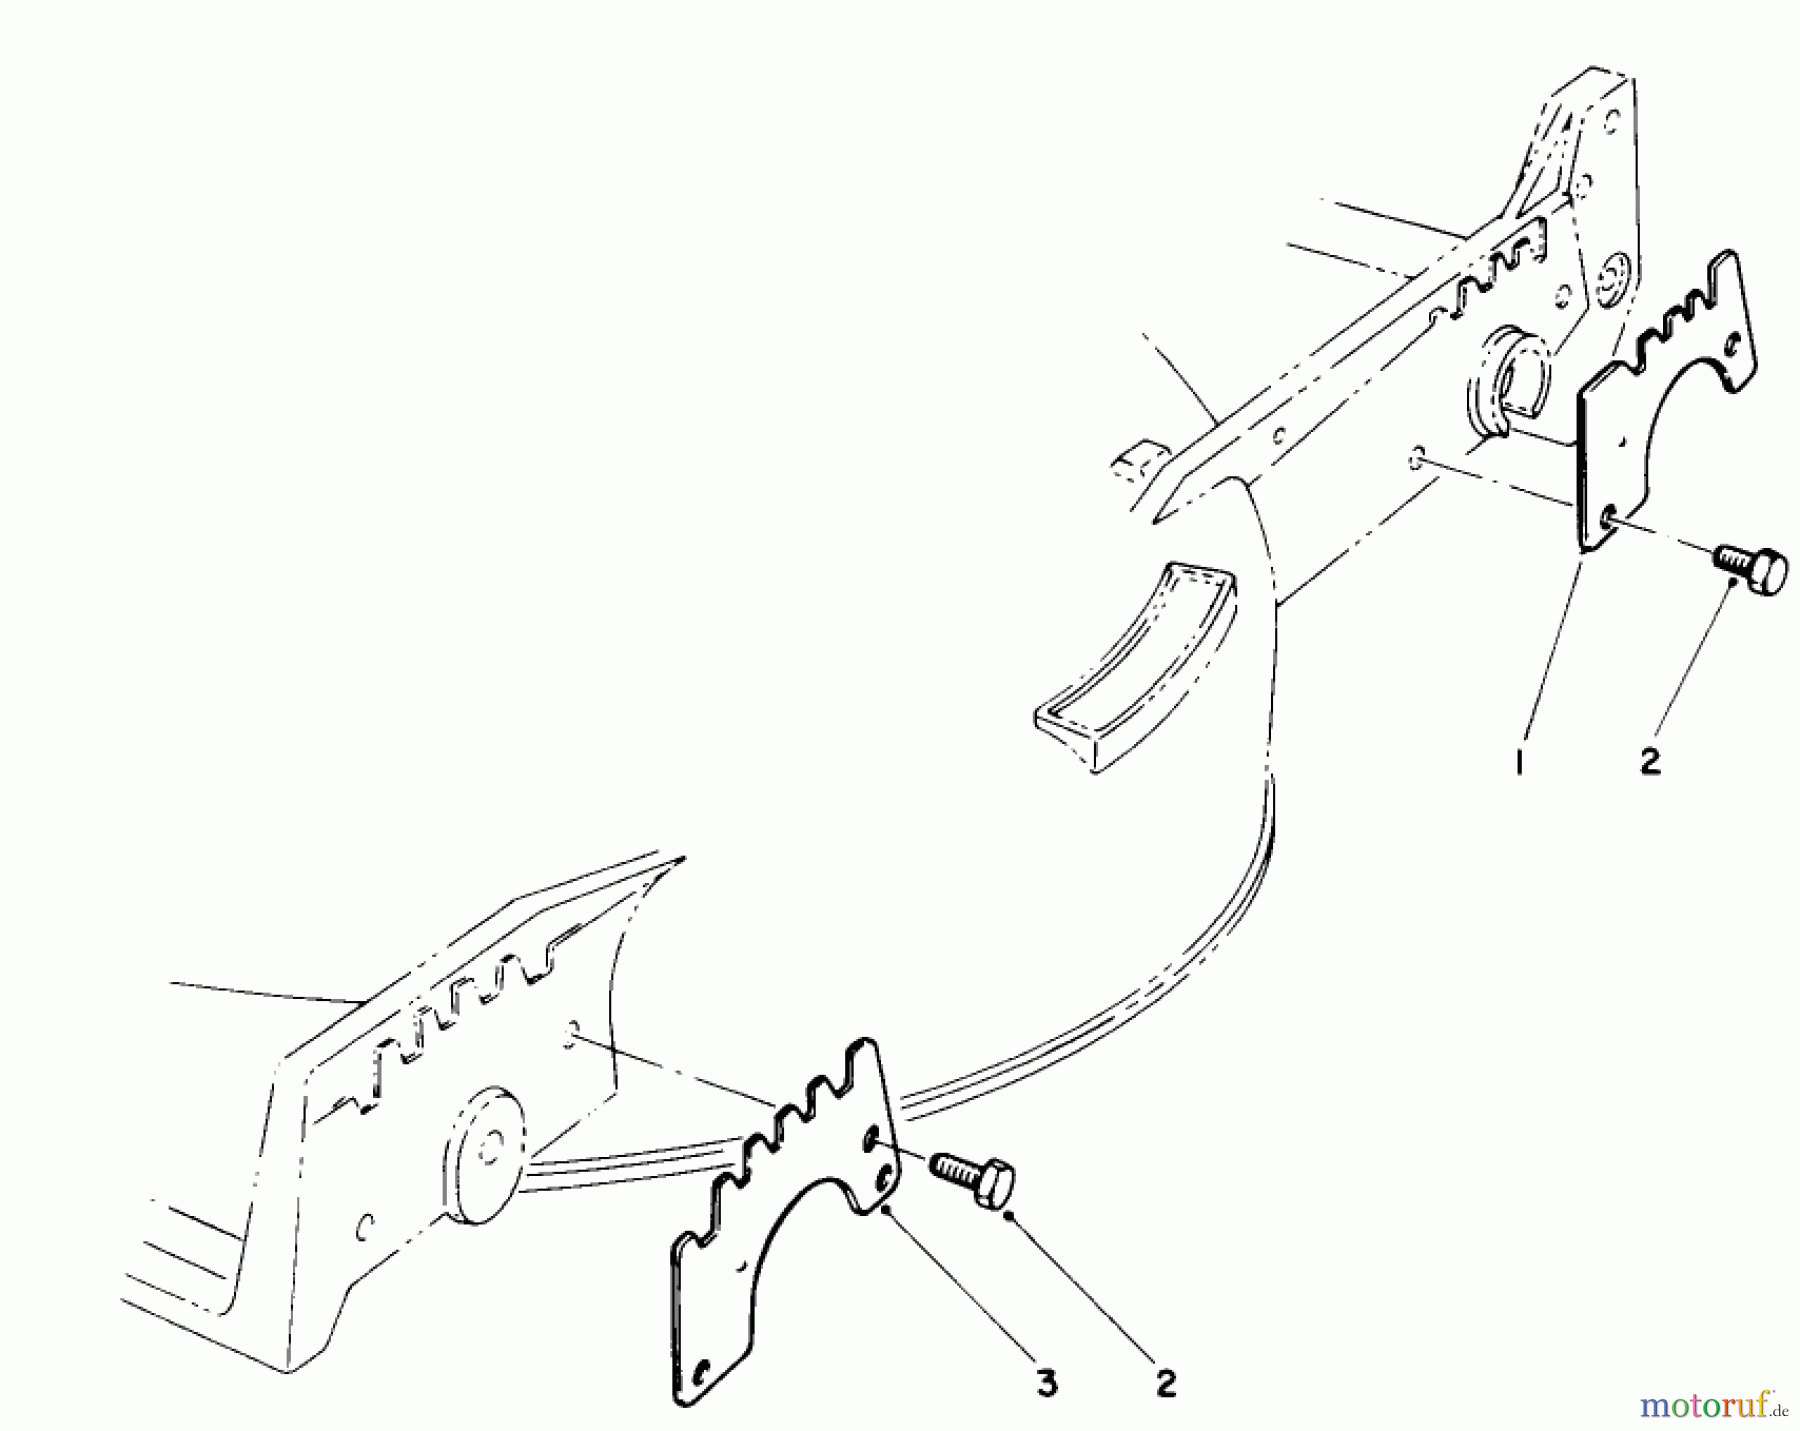  Toro Neu Mowers, Walk-Behind Seite 1 20219 - Toro Lawnmower, 1991 (1000001-1999999) WEAR PLATE MODEL NO. 49-4080 (OPTIONAL)